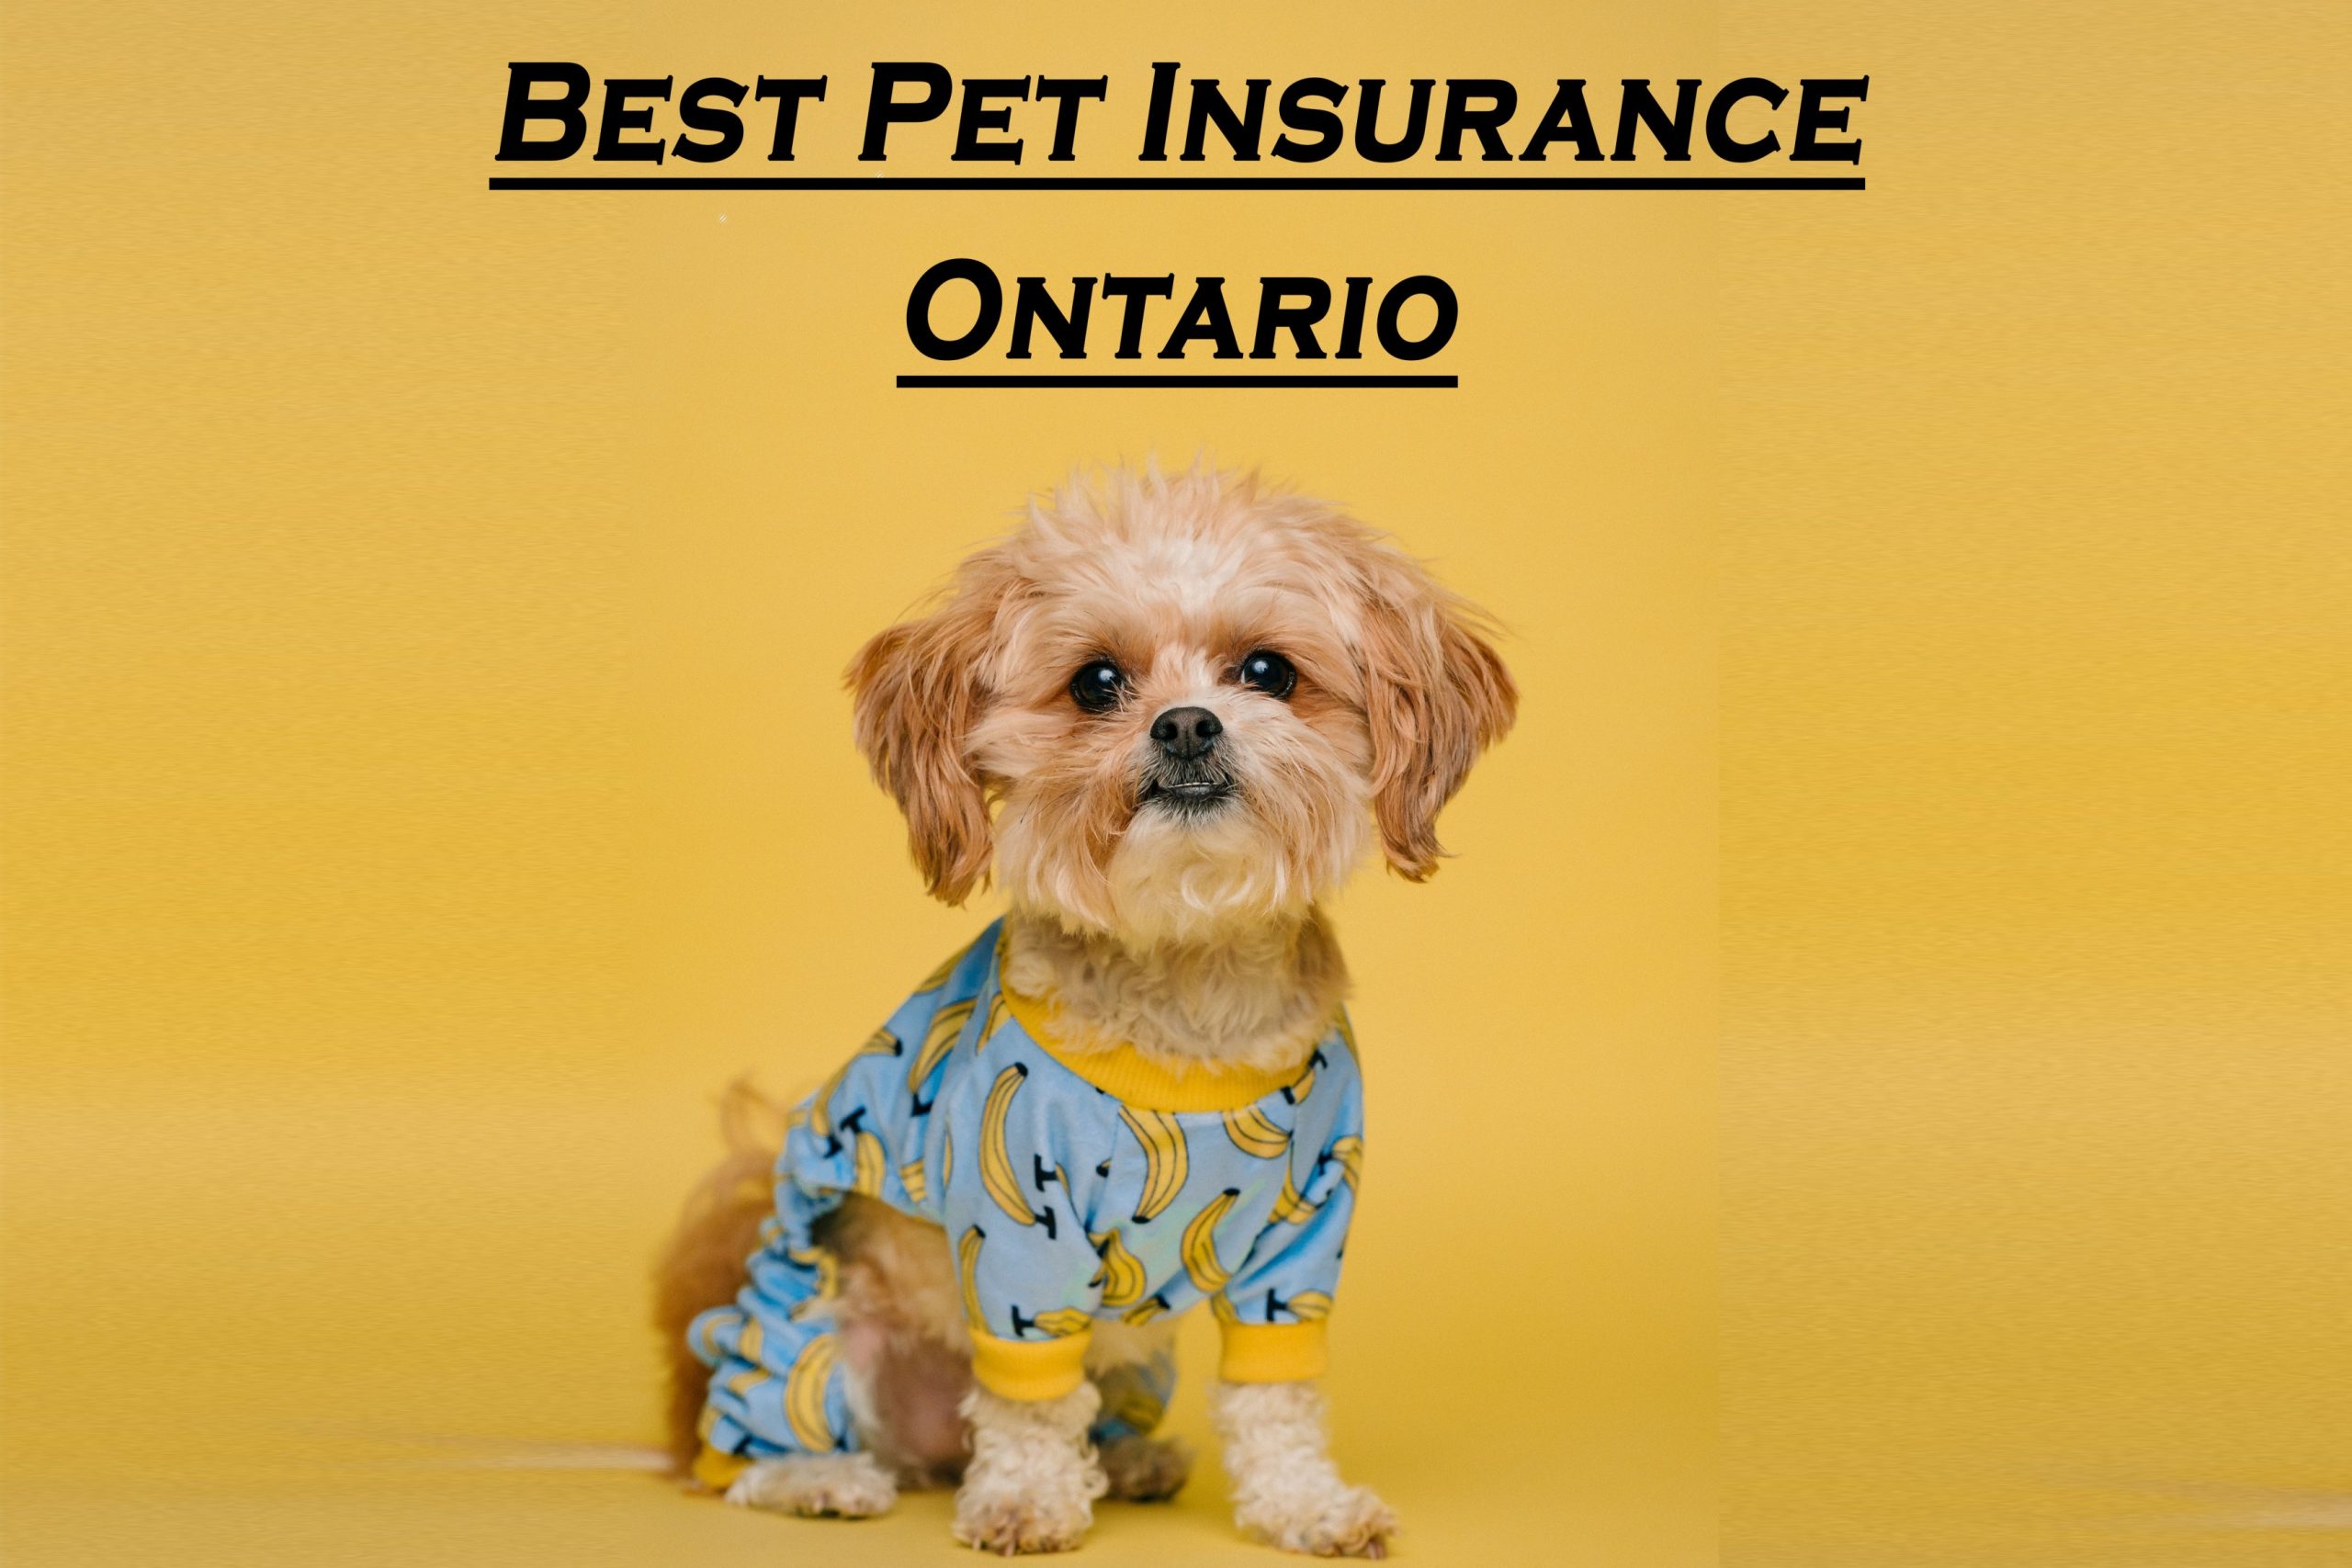 Best Pet Insurance Ontario